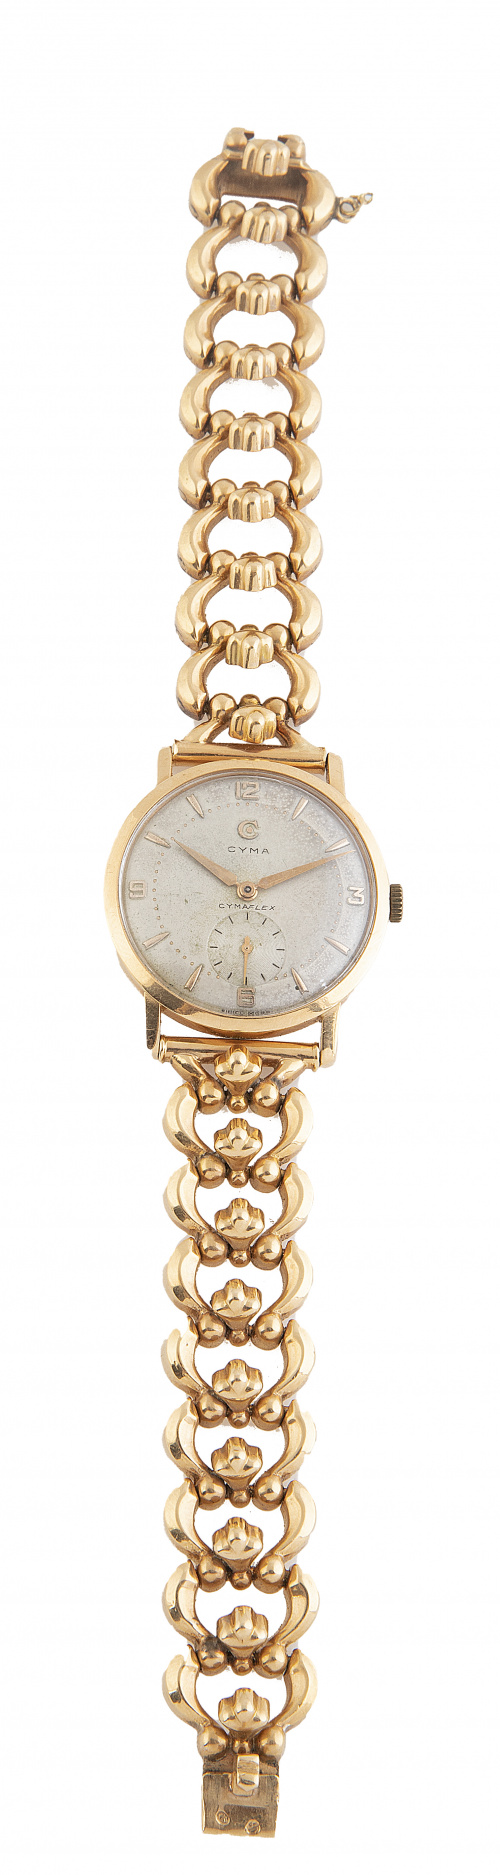 Reloj CYMA años 50 en oro con pulsera articulada